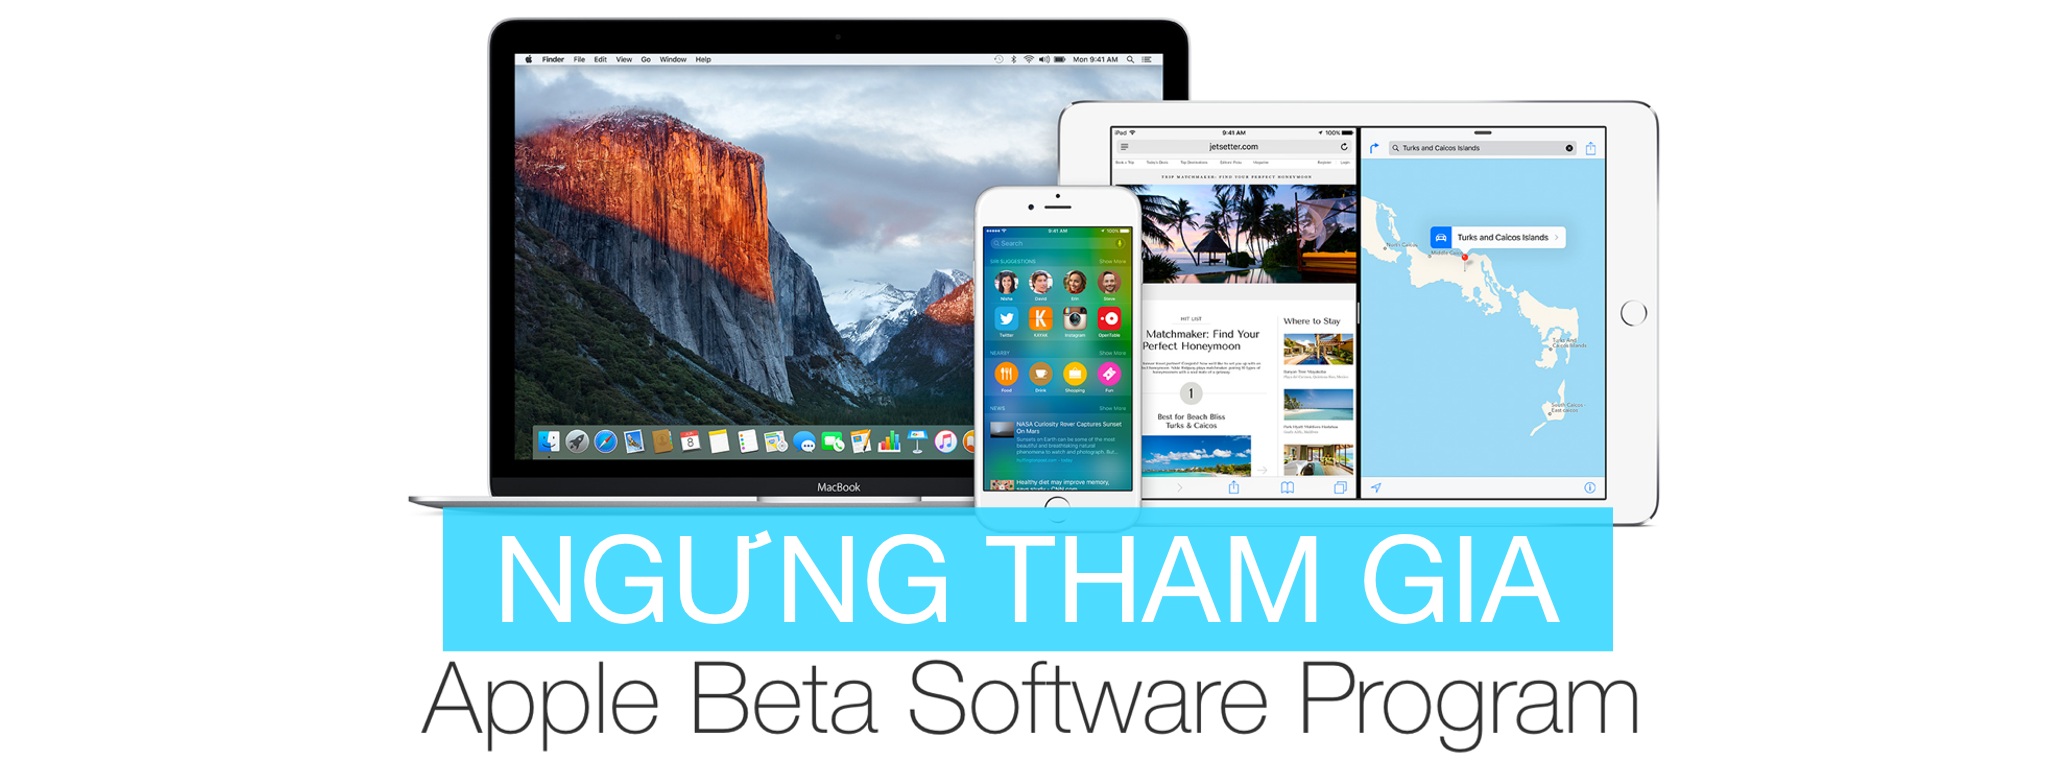 [Mac, iOS] Cách ngừng tham gia chương trình Beta của Apple